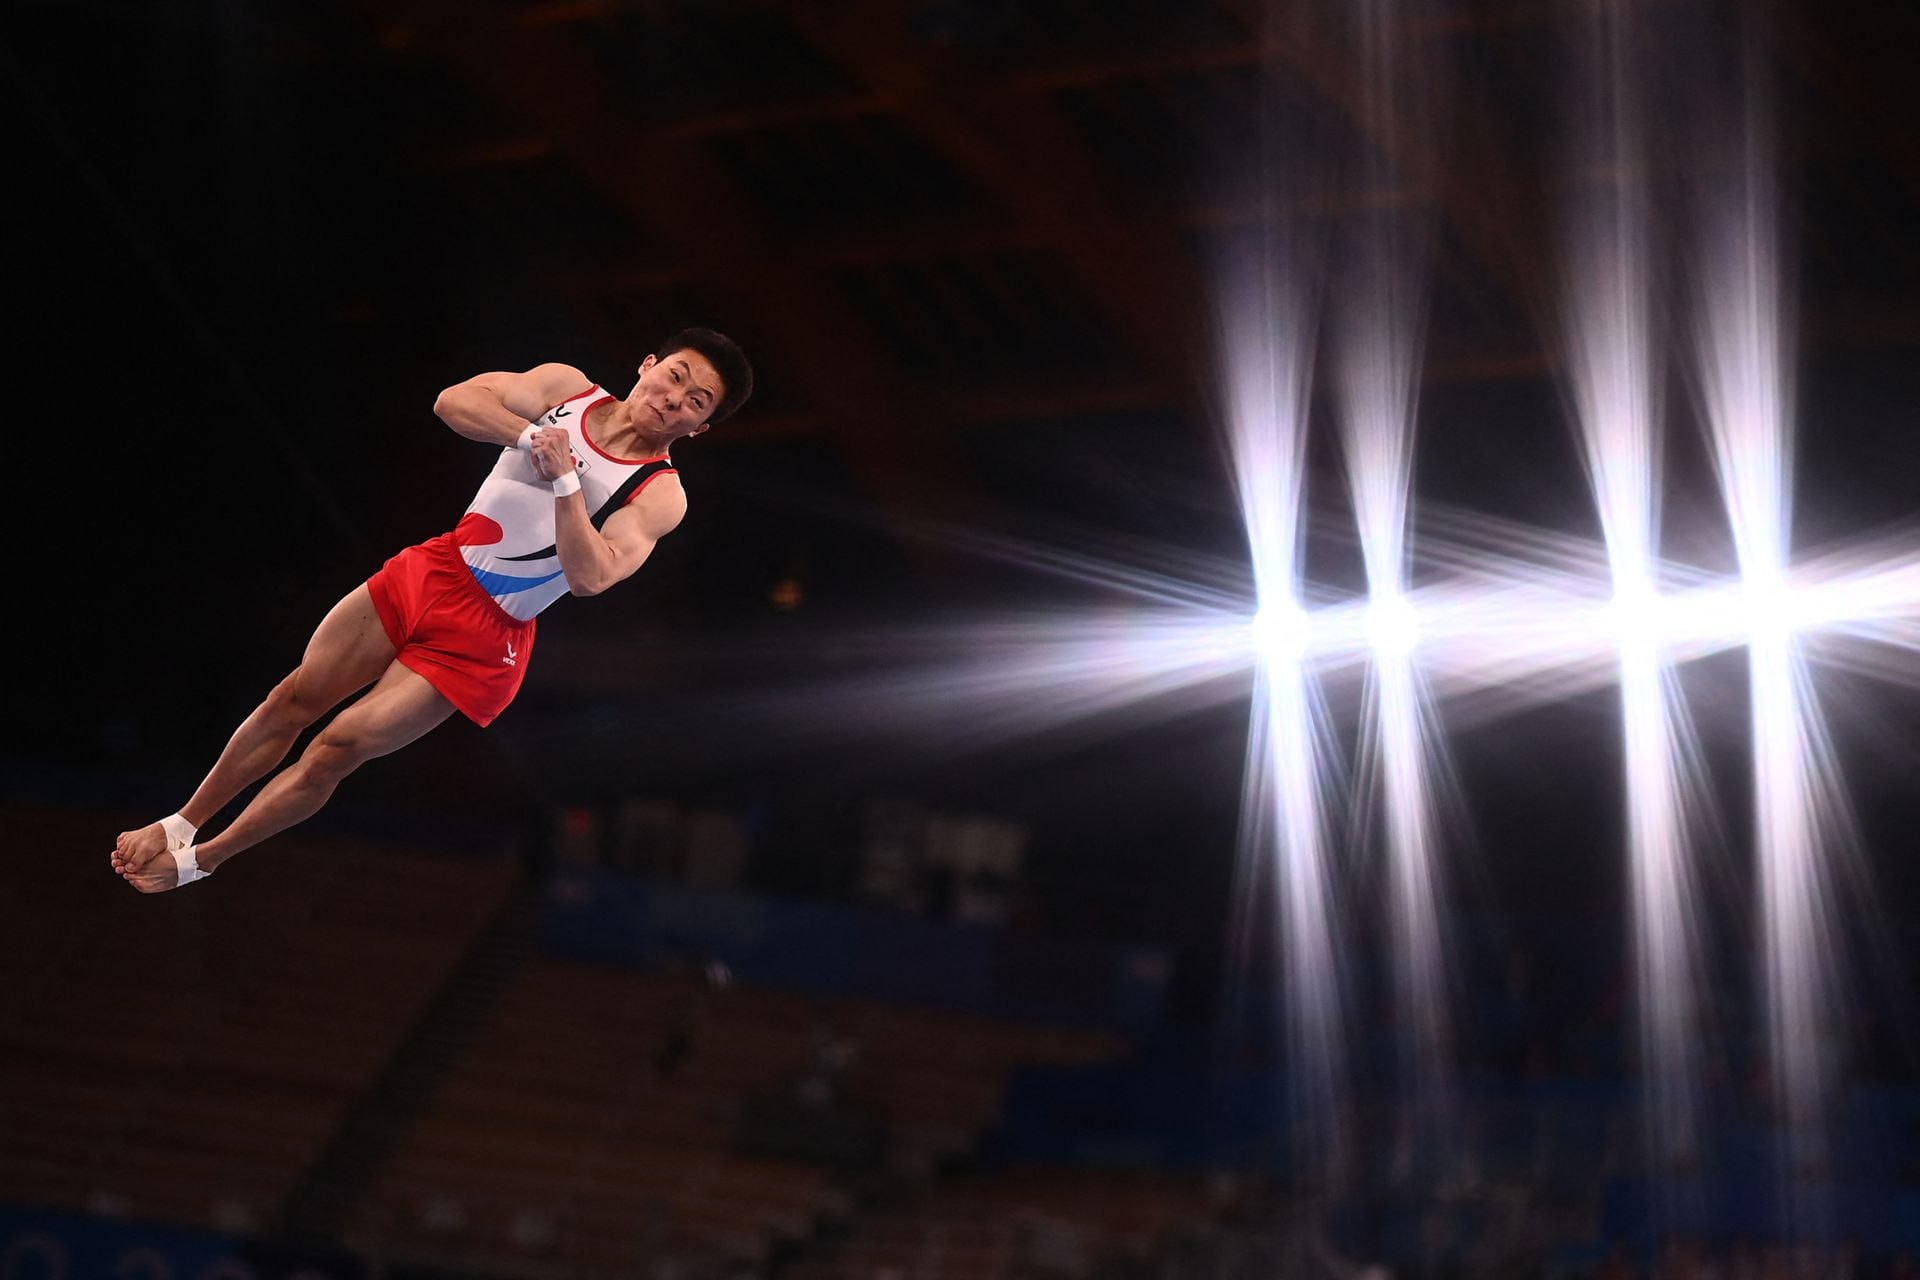 Jeahwan Shin, de Corea del Sur, salta en la final de gimnasia artística 